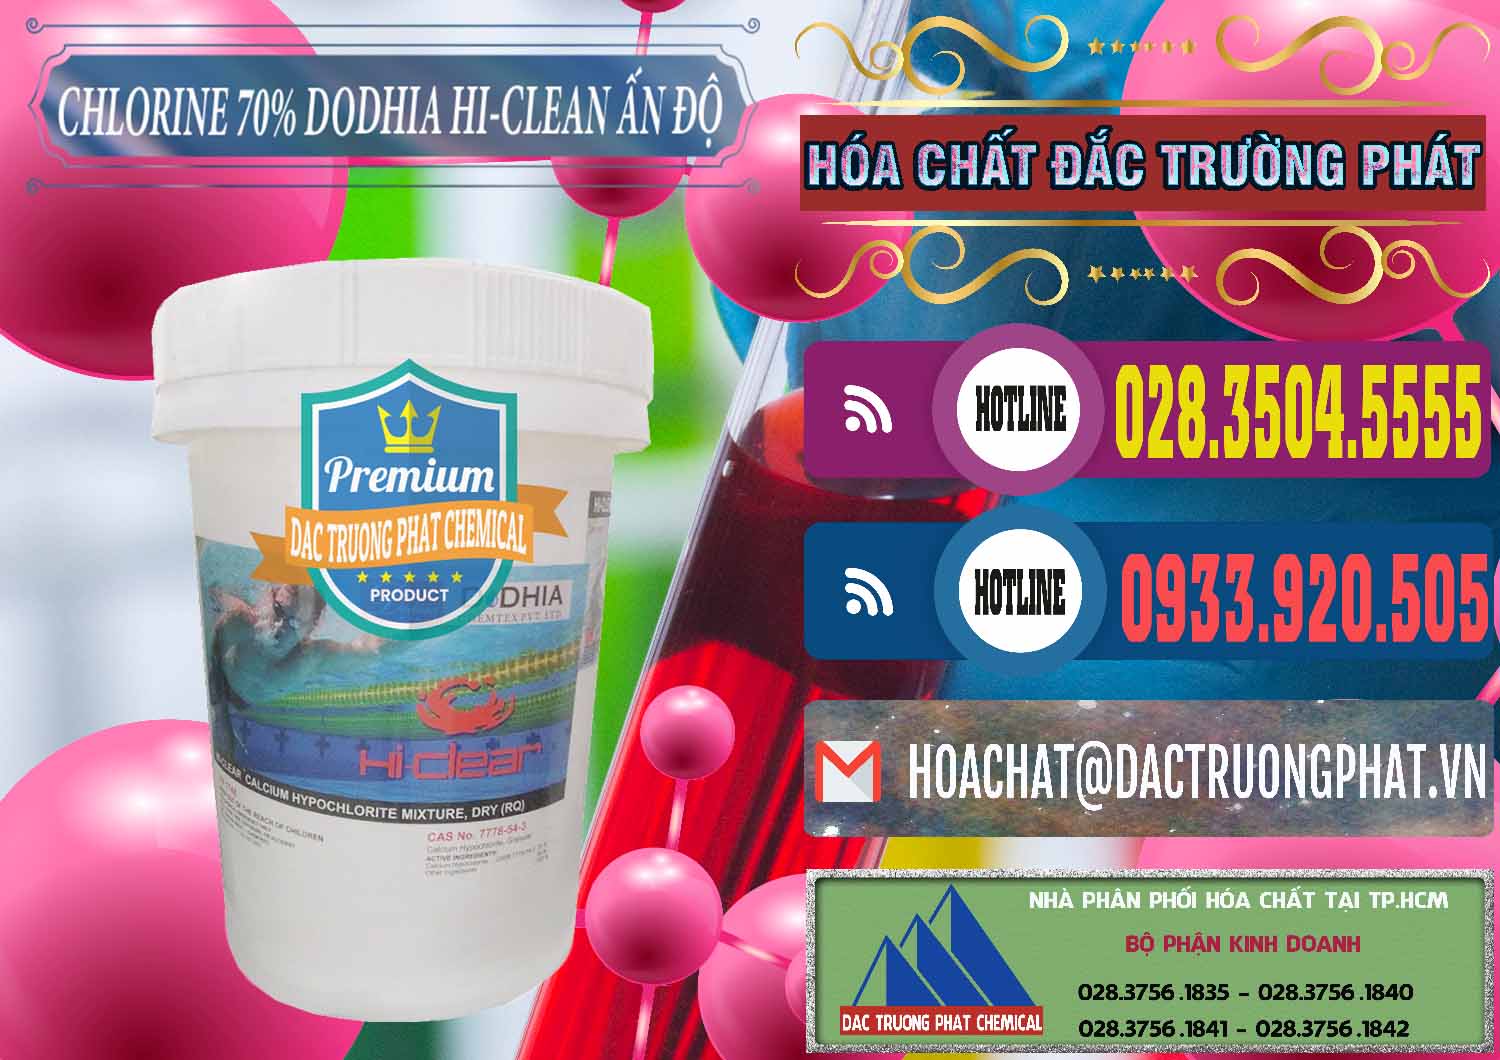 Đơn vị chuyên kinh doanh & bán Chlorine – Clorin 70% Dodhia Hi-Clean Ấn Độ India - 0214 - Nơi chuyên cung ứng _ phân phối hóa chất tại TP.HCM - muabanhoachat.com.vn